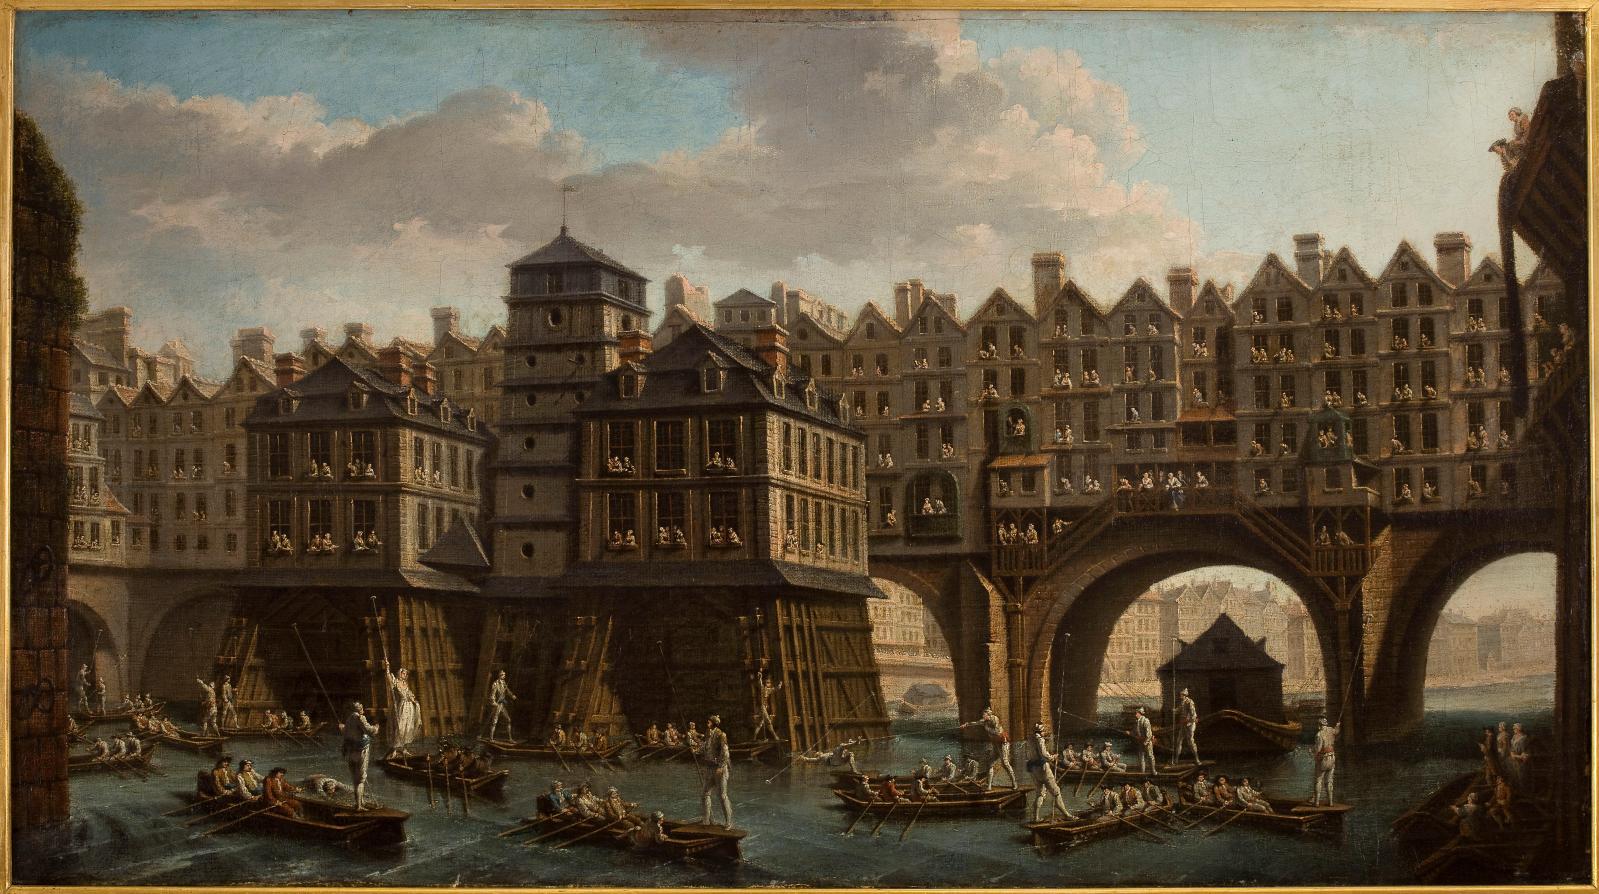 Nicolas-Jean-Baptiste Raguenet, La Joute des mariniers, entre le pont Notre-Dame et le pont au Change, 1756, huile sur toile, Paris, musée Carnavalet.